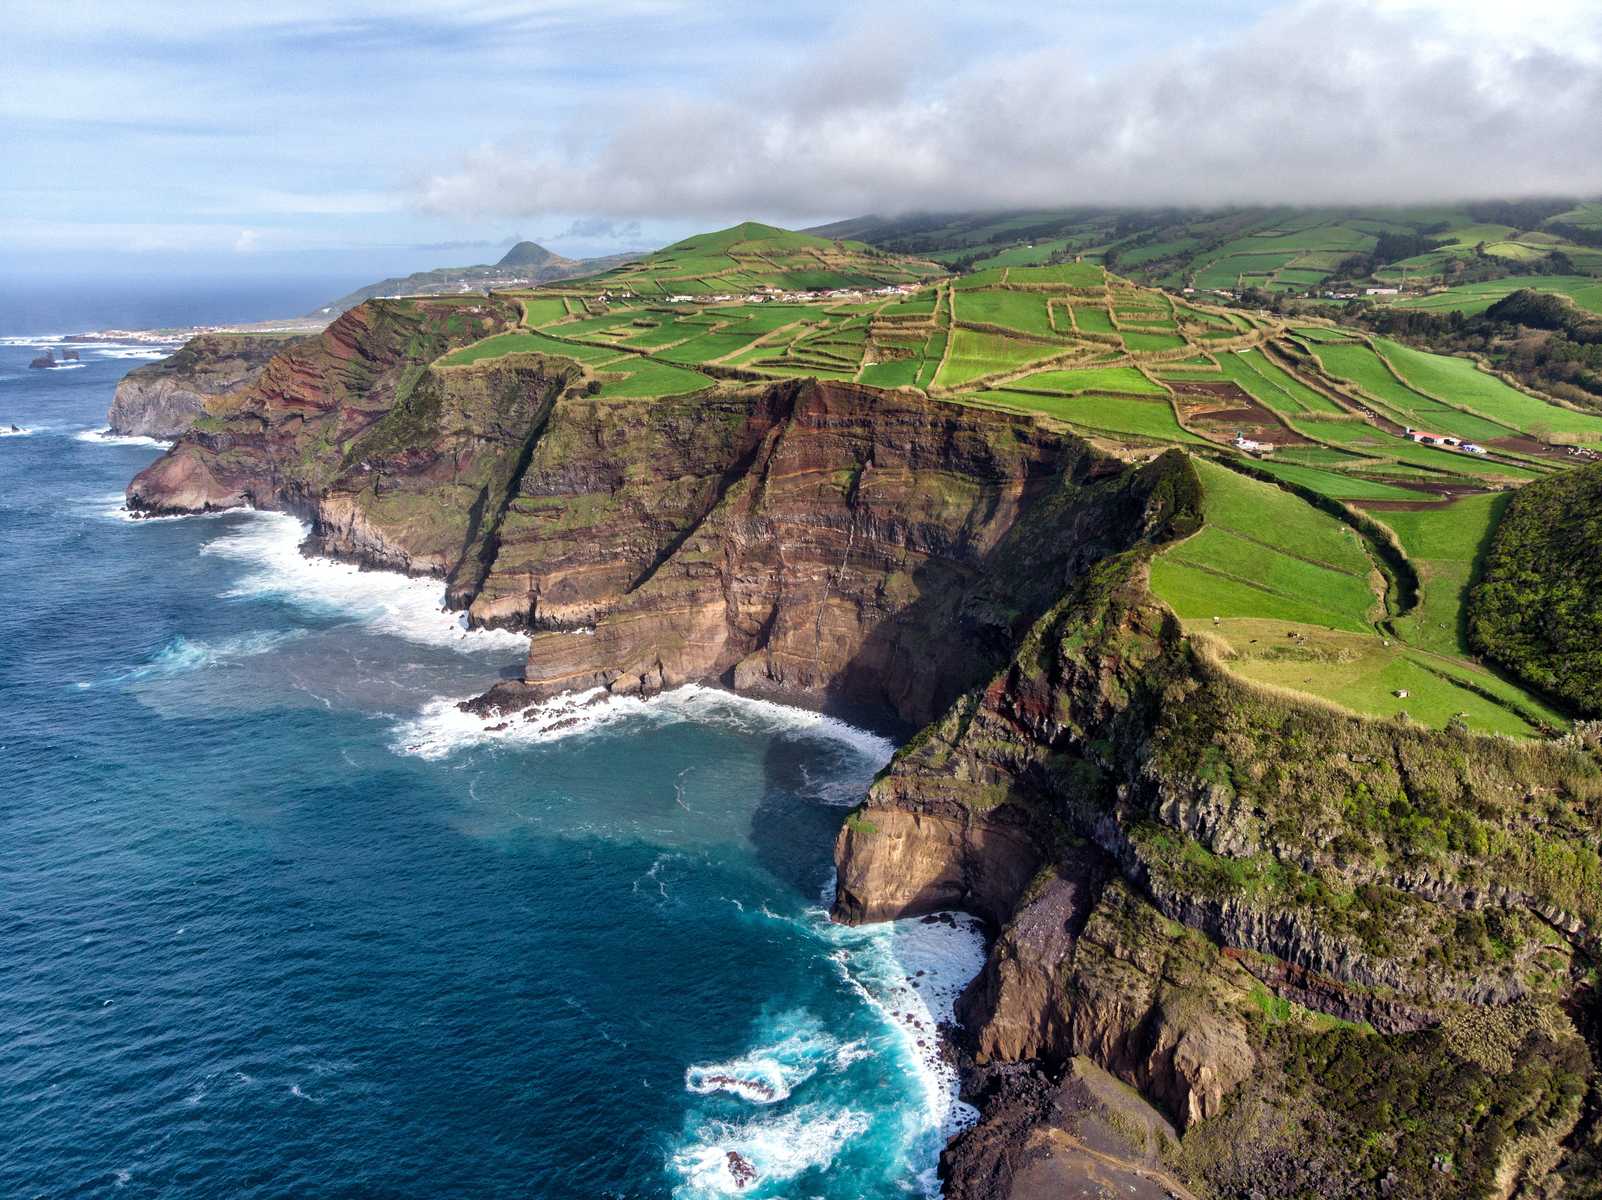 Vue aérienne des cultures sur l'île de Pico, aux Açores